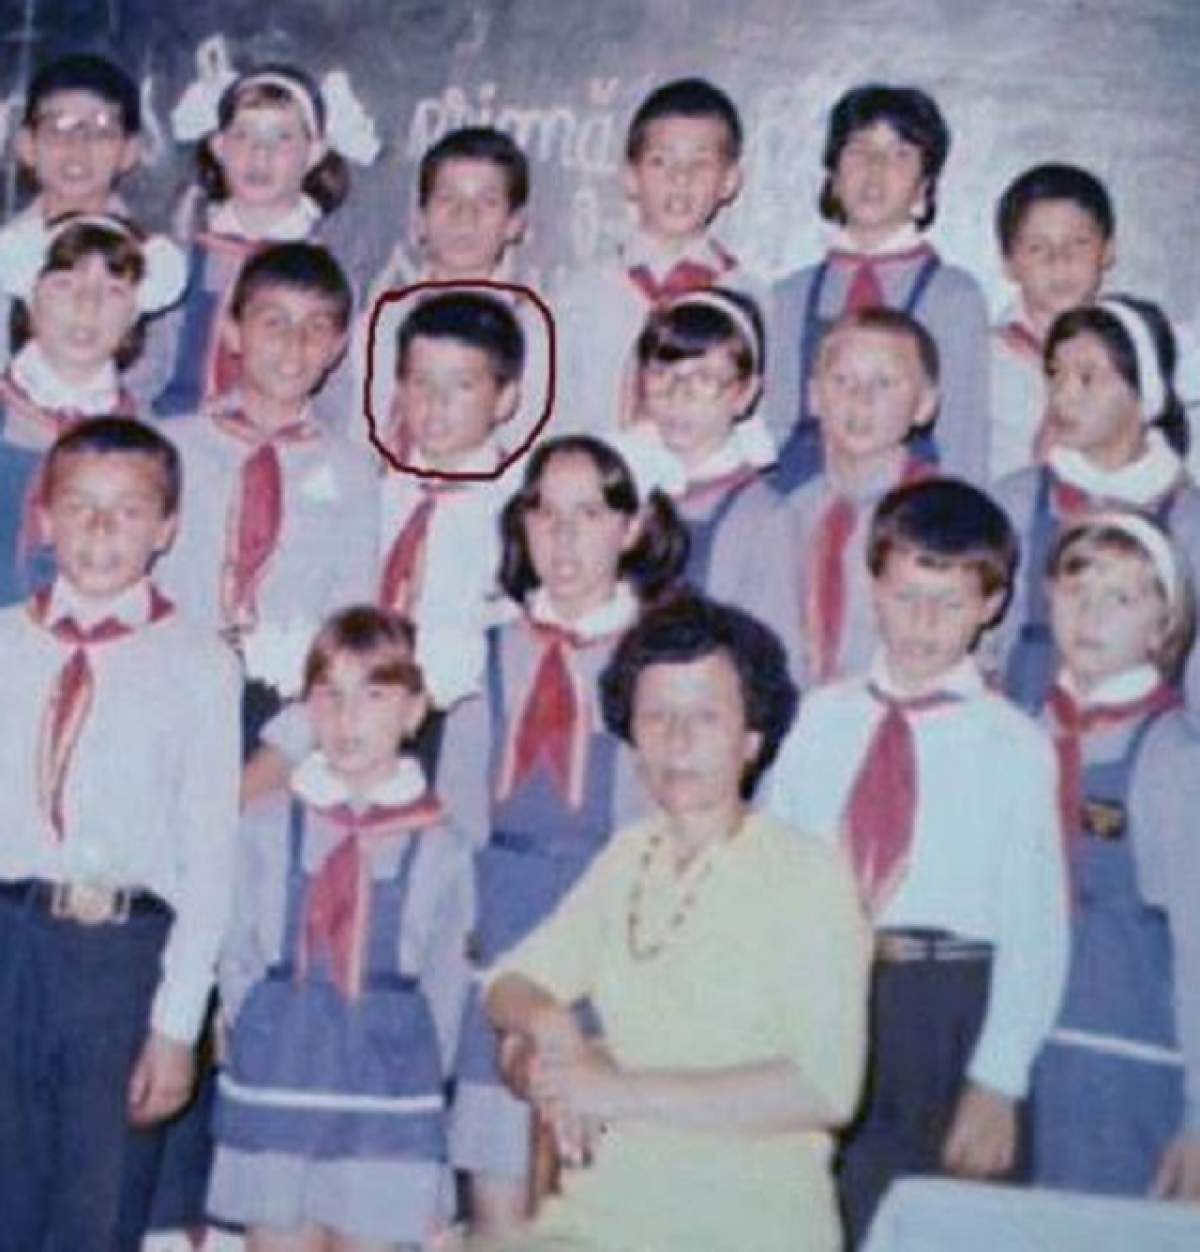 Imagine de colecţie! Ghiceşti cine e băieţelul timid din fotografie?